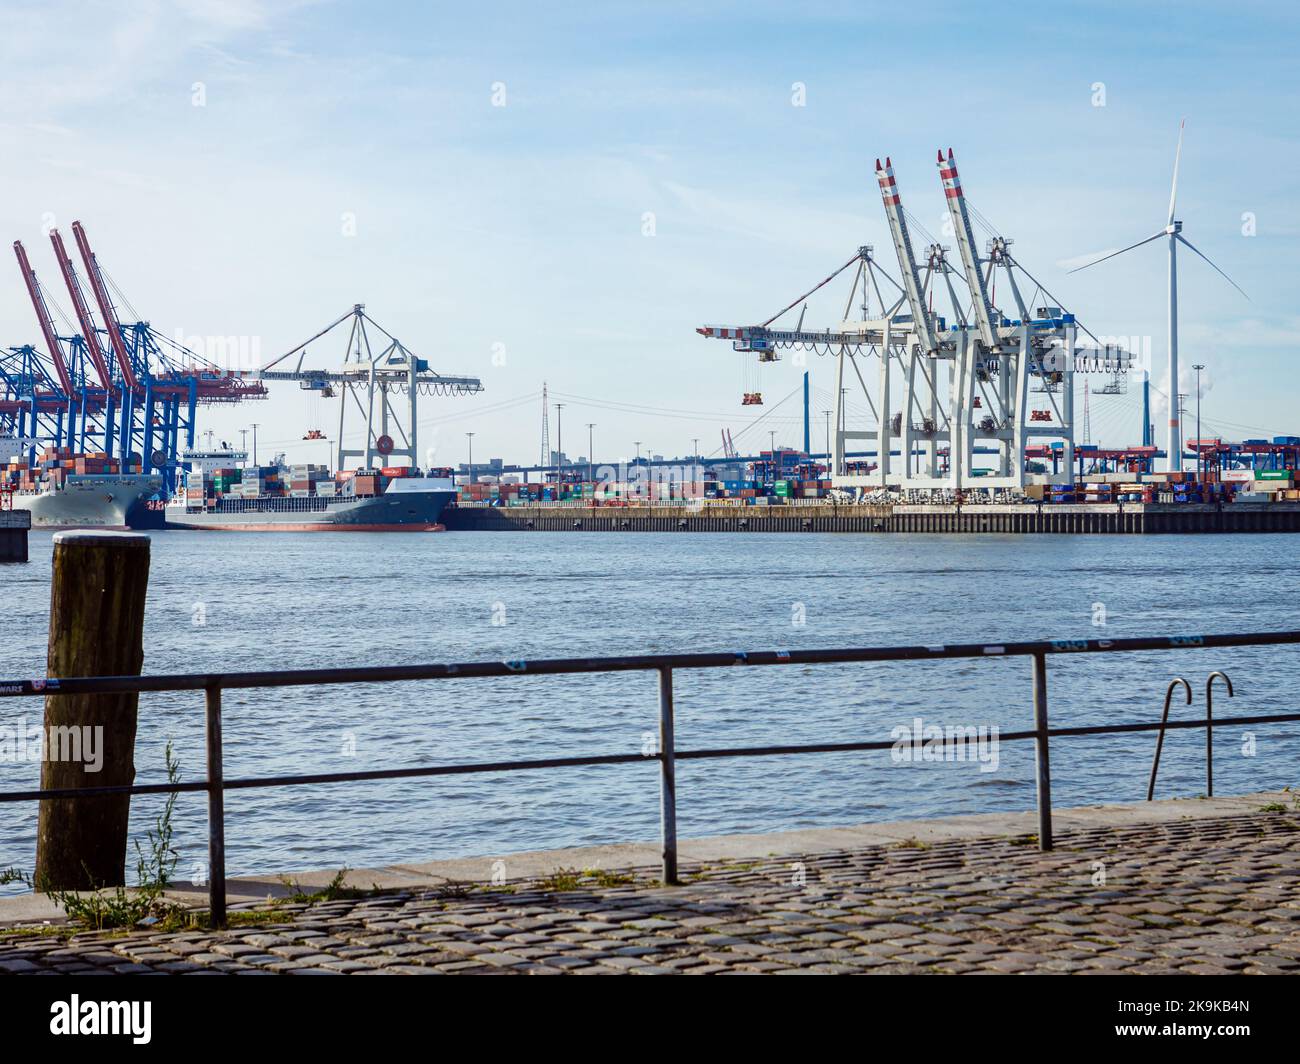 Hamburgo, Alemania, 23th de septiembre de 2022: Terminal de contenedores Tollerort, que está lista para procesar los buques portacontenedores más grandes. Foto de stock